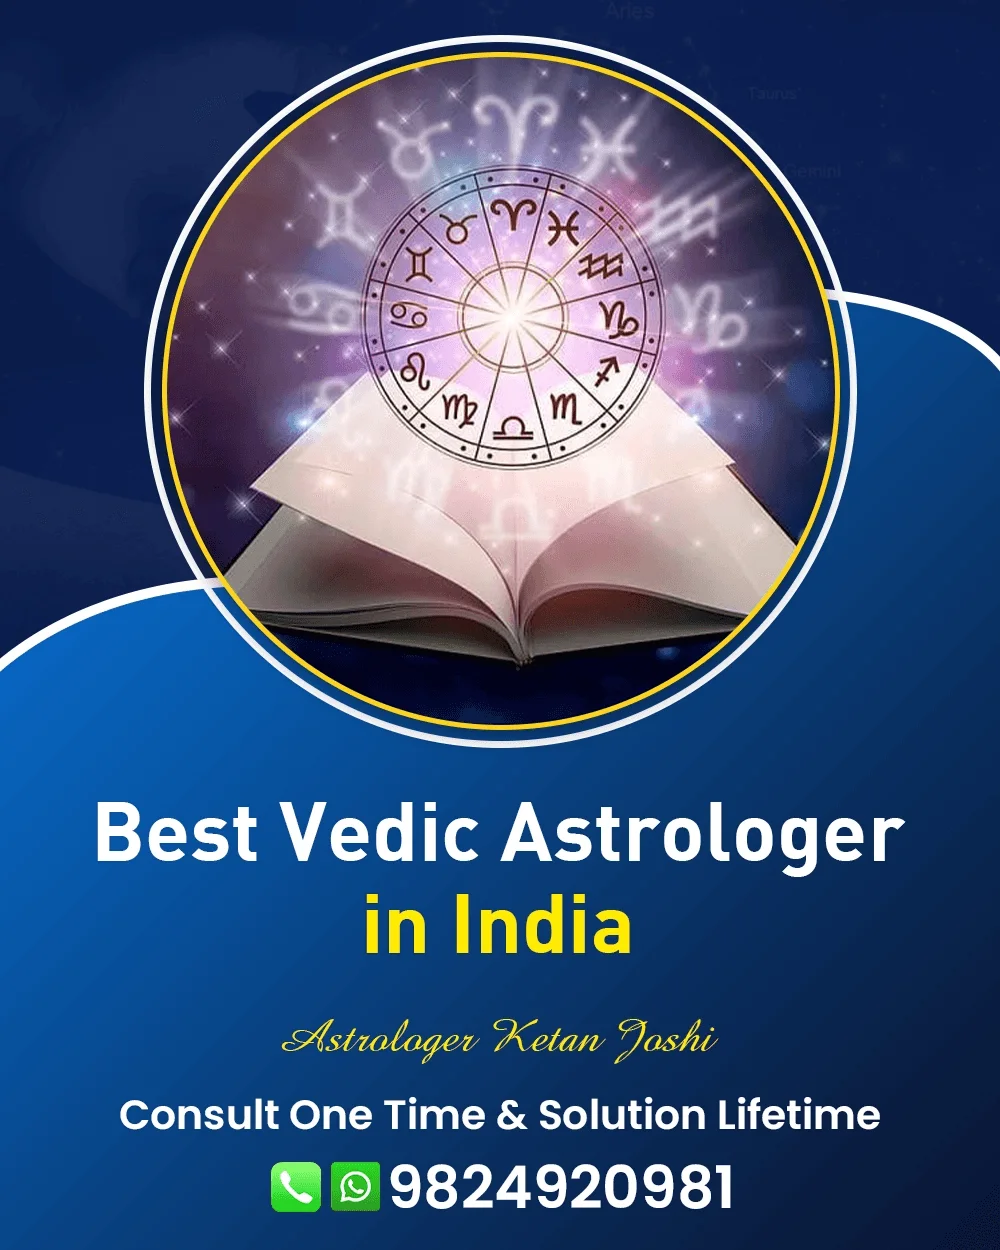 Best Astrologer In Gangtok